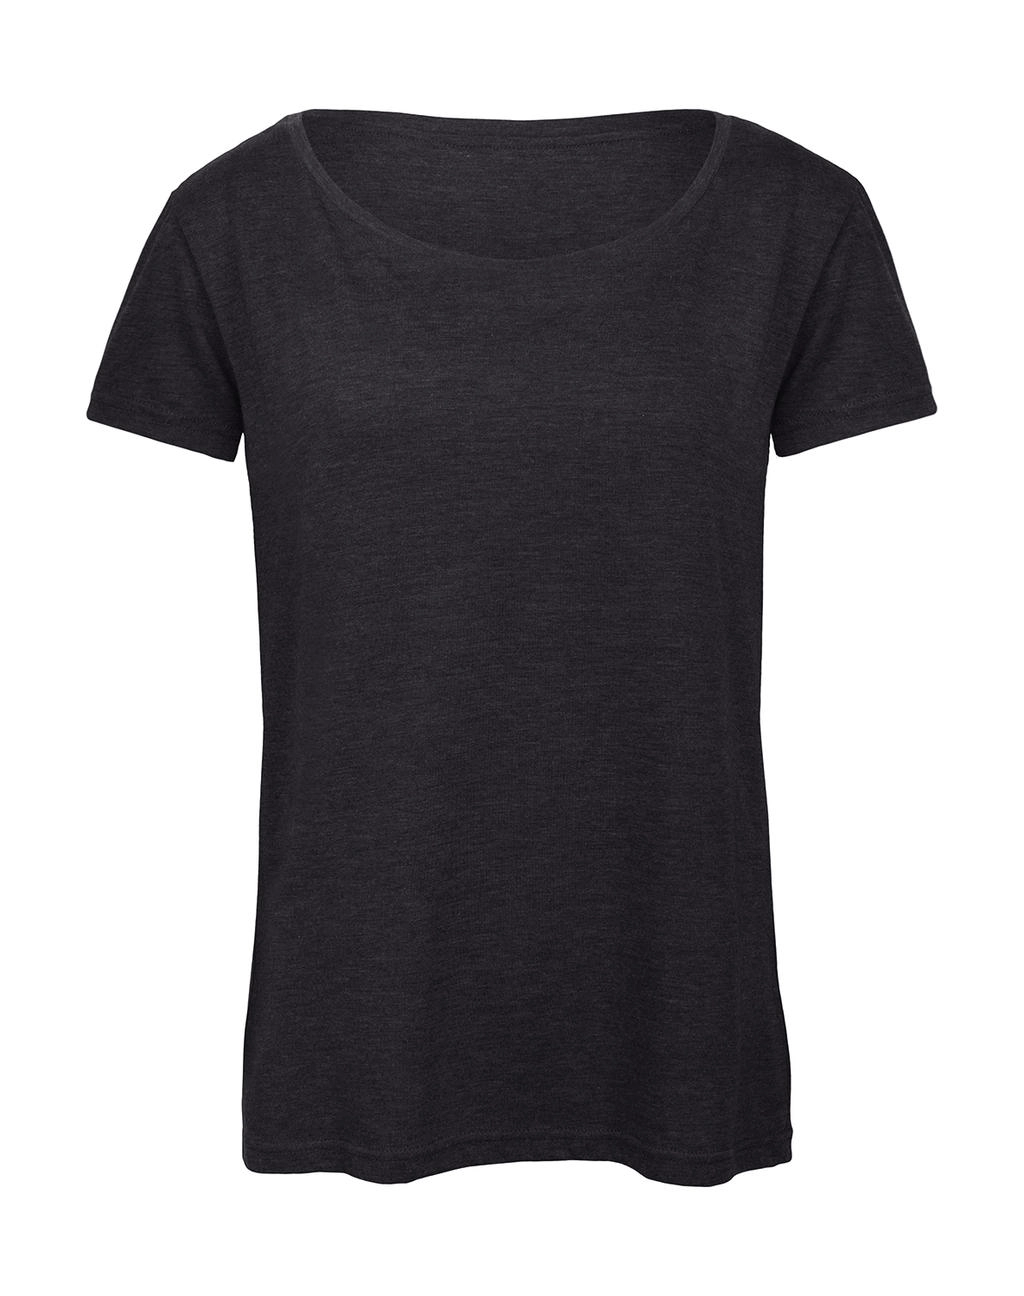 Triblend/women T-Shirt zum Besticken und Bedrucken in der Farbe Heather Dark Grey mit Ihren Logo, Schriftzug oder Motiv.